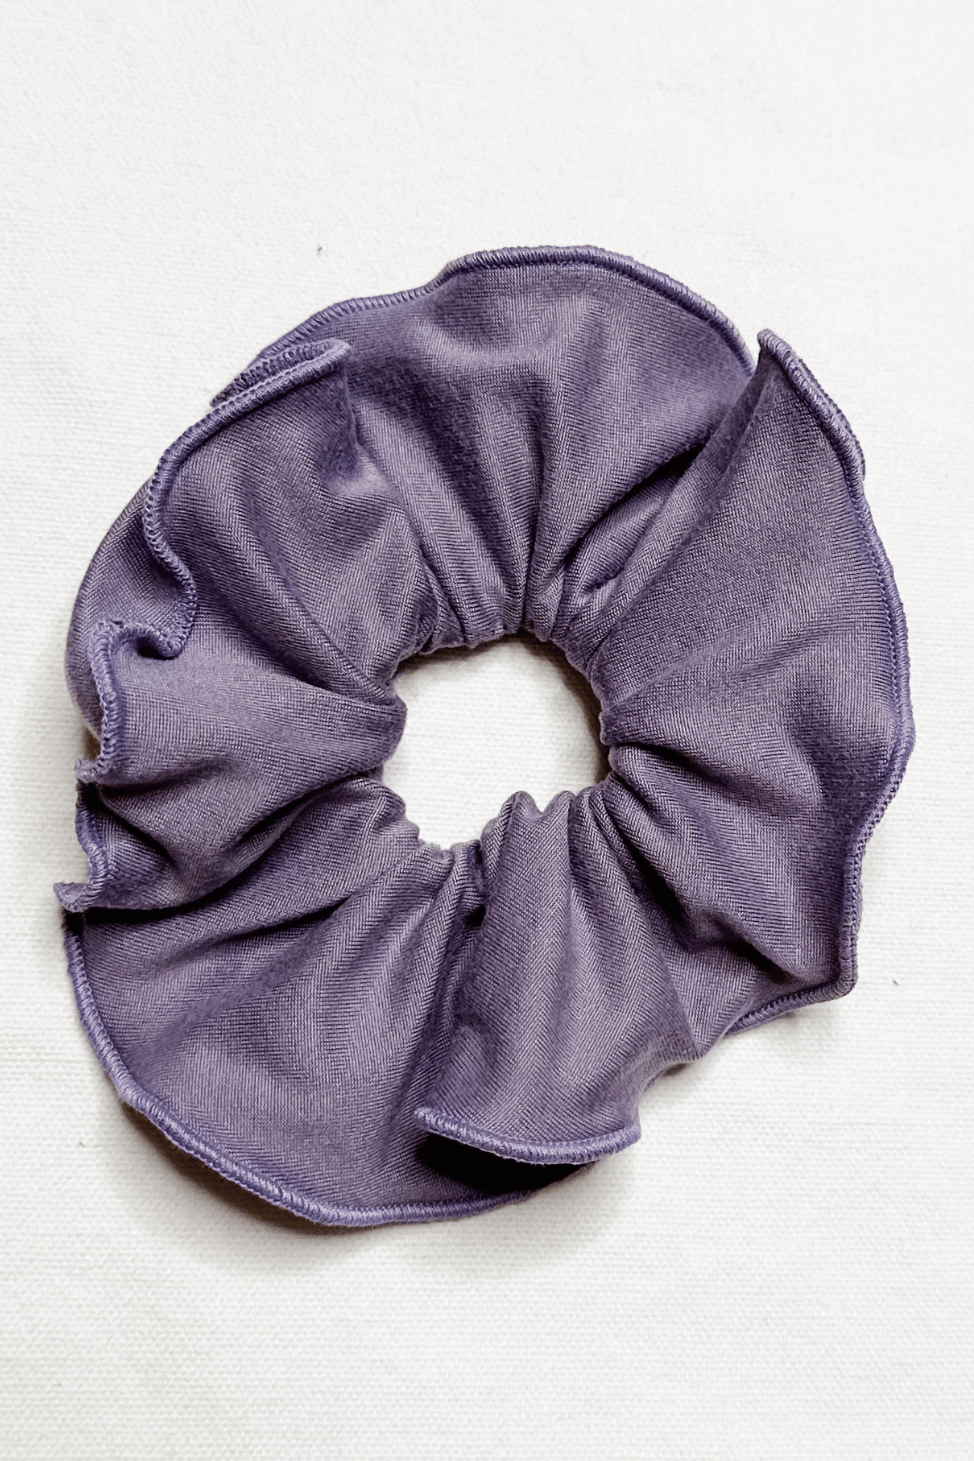 Scrunchie in Purple color from Diane Kroe